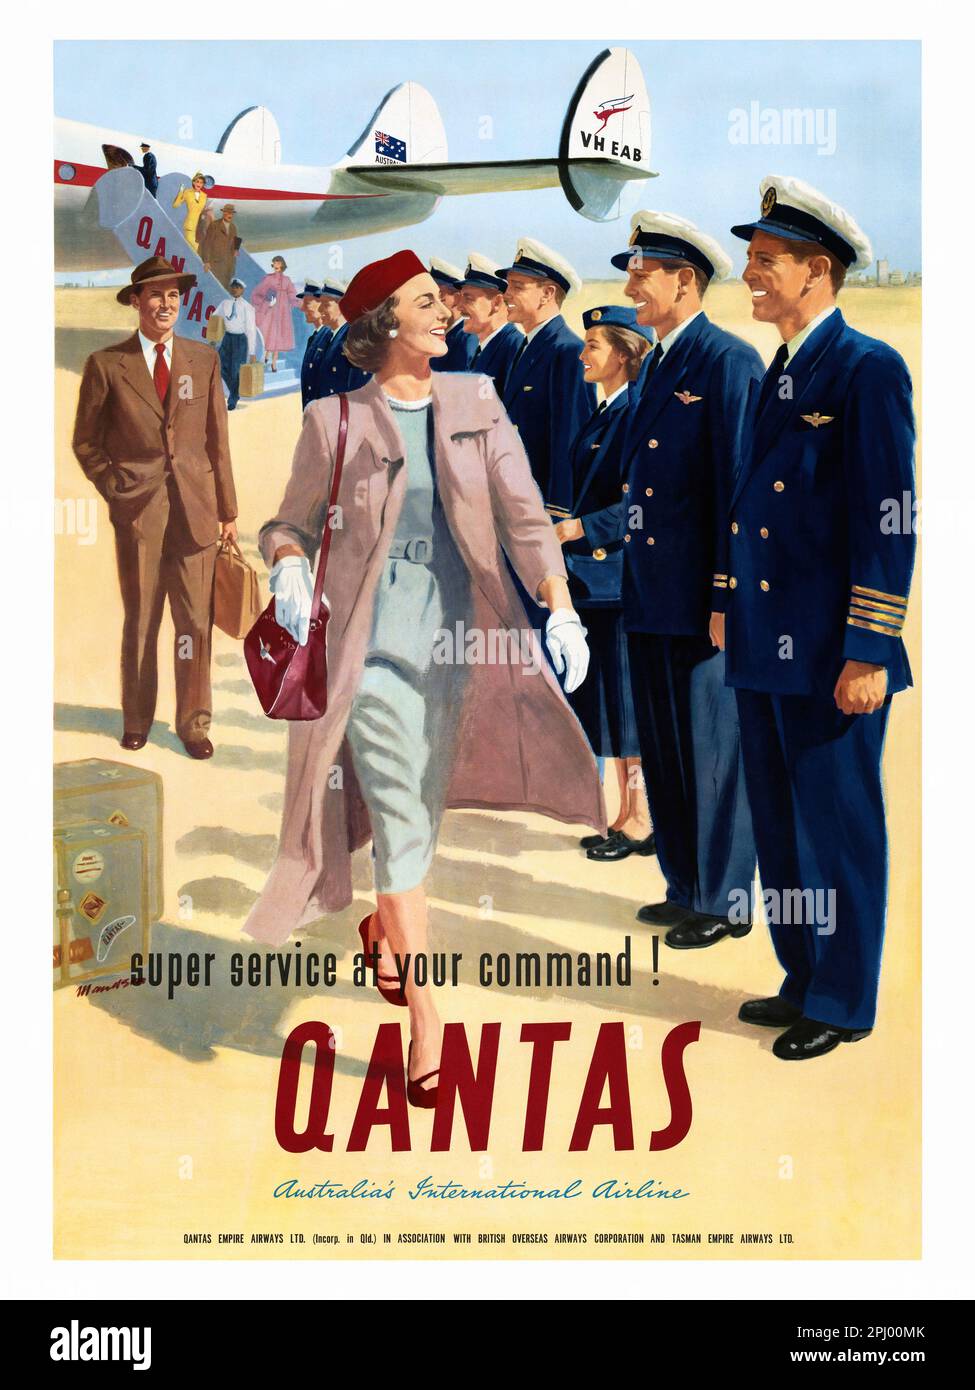 Super servicio a su orden. Qantas. Aerolínea internacional de Australia por John Maudson (1918-1996). Póster publicado en 1947 en Australia. Foto de stock